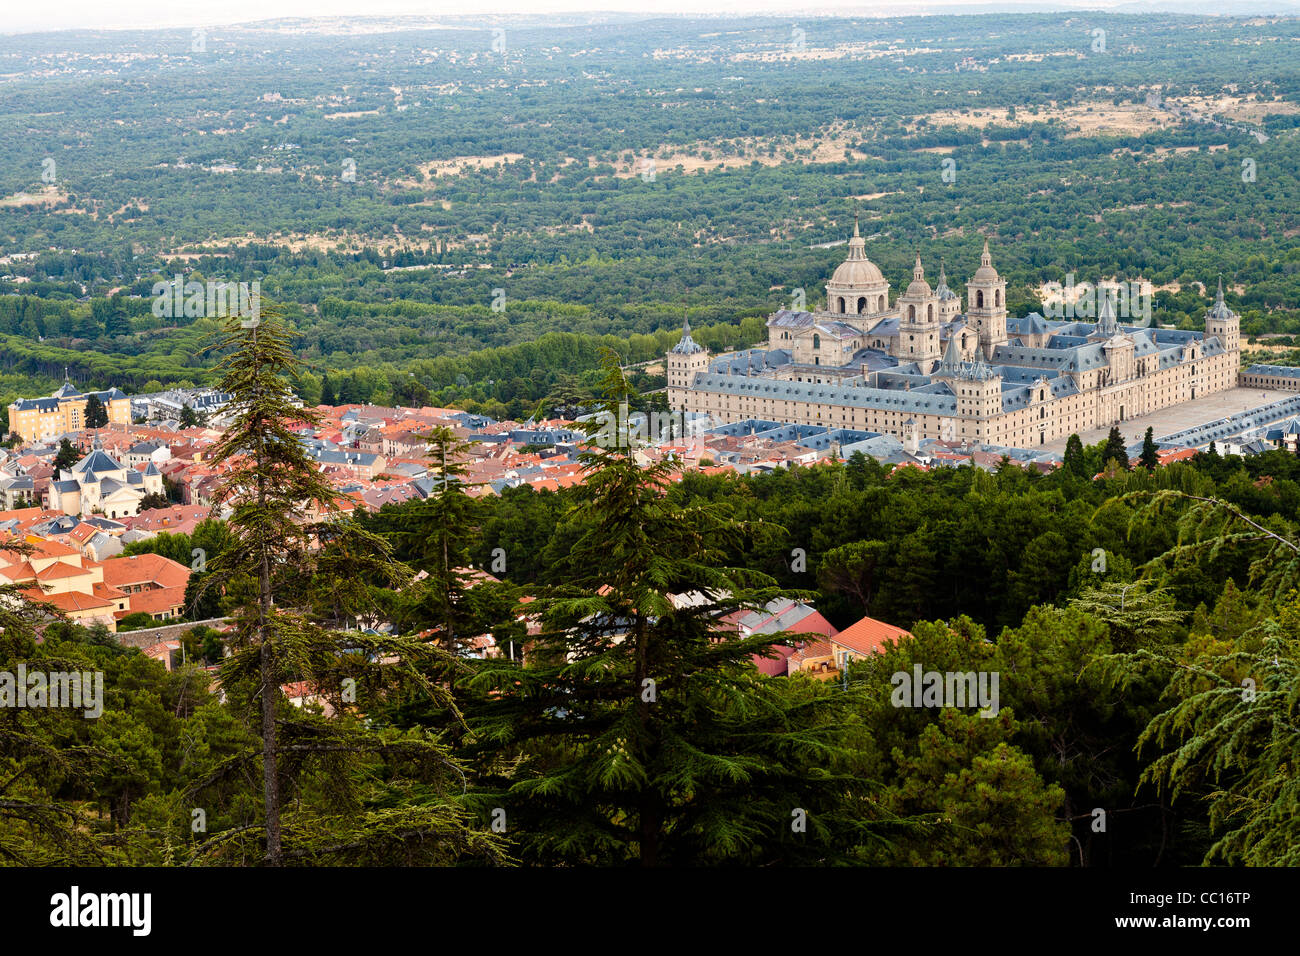 View of the San Lorenzo de El Escorial Monastery Complex from Miradores outlook. Stock Photo